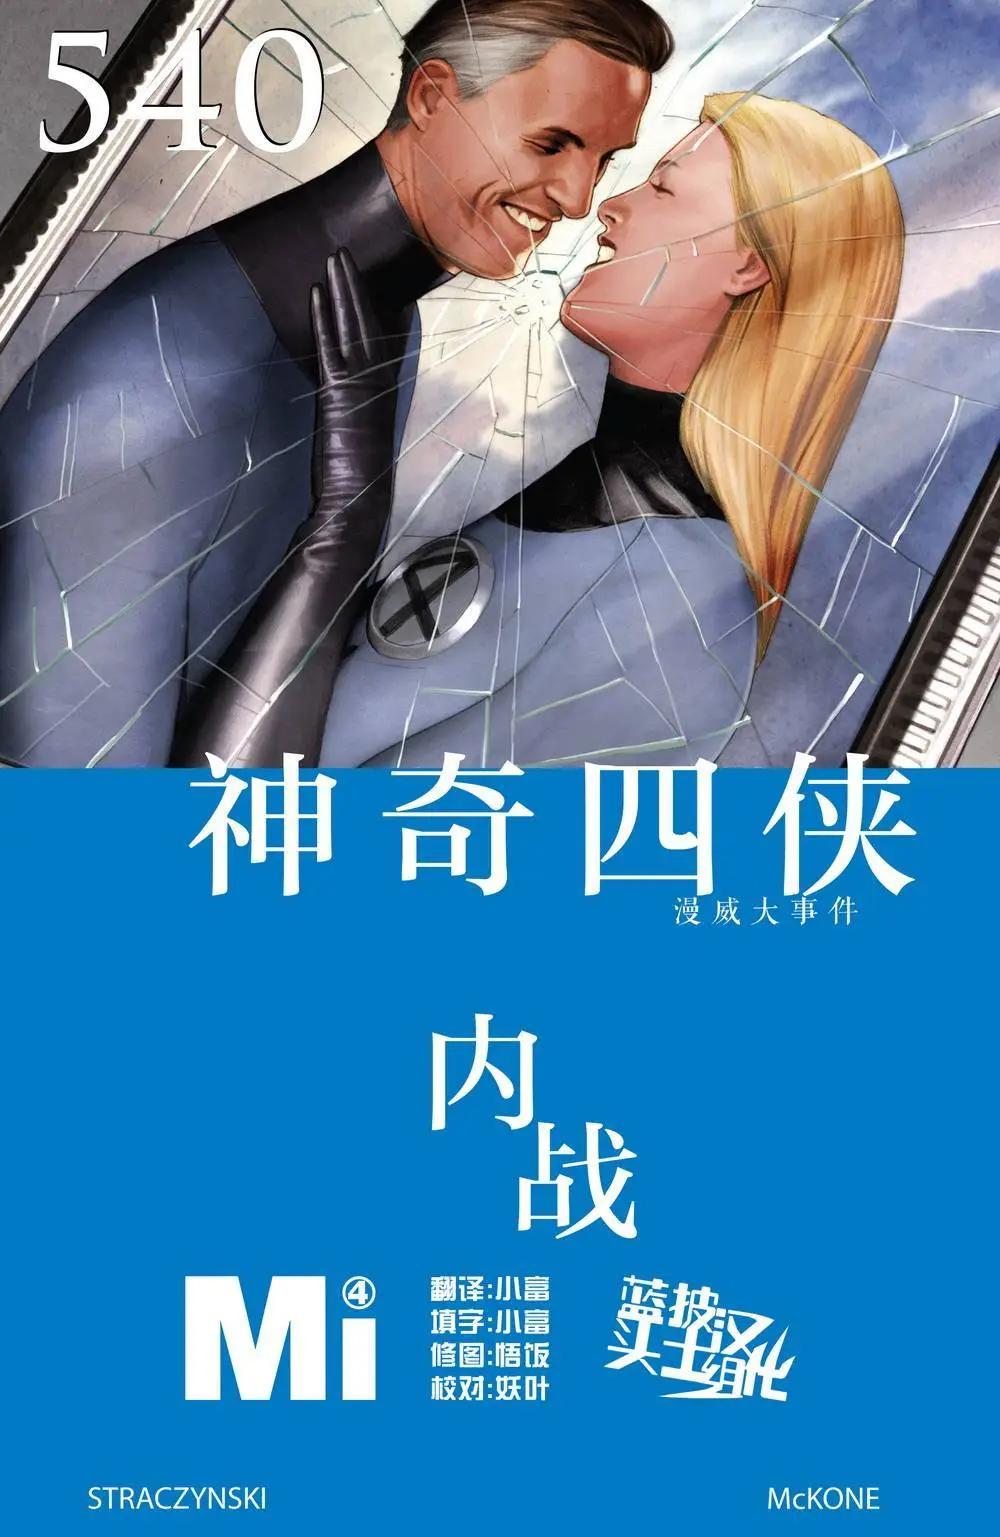 内战2006 - 神奇四侠#540 - 1